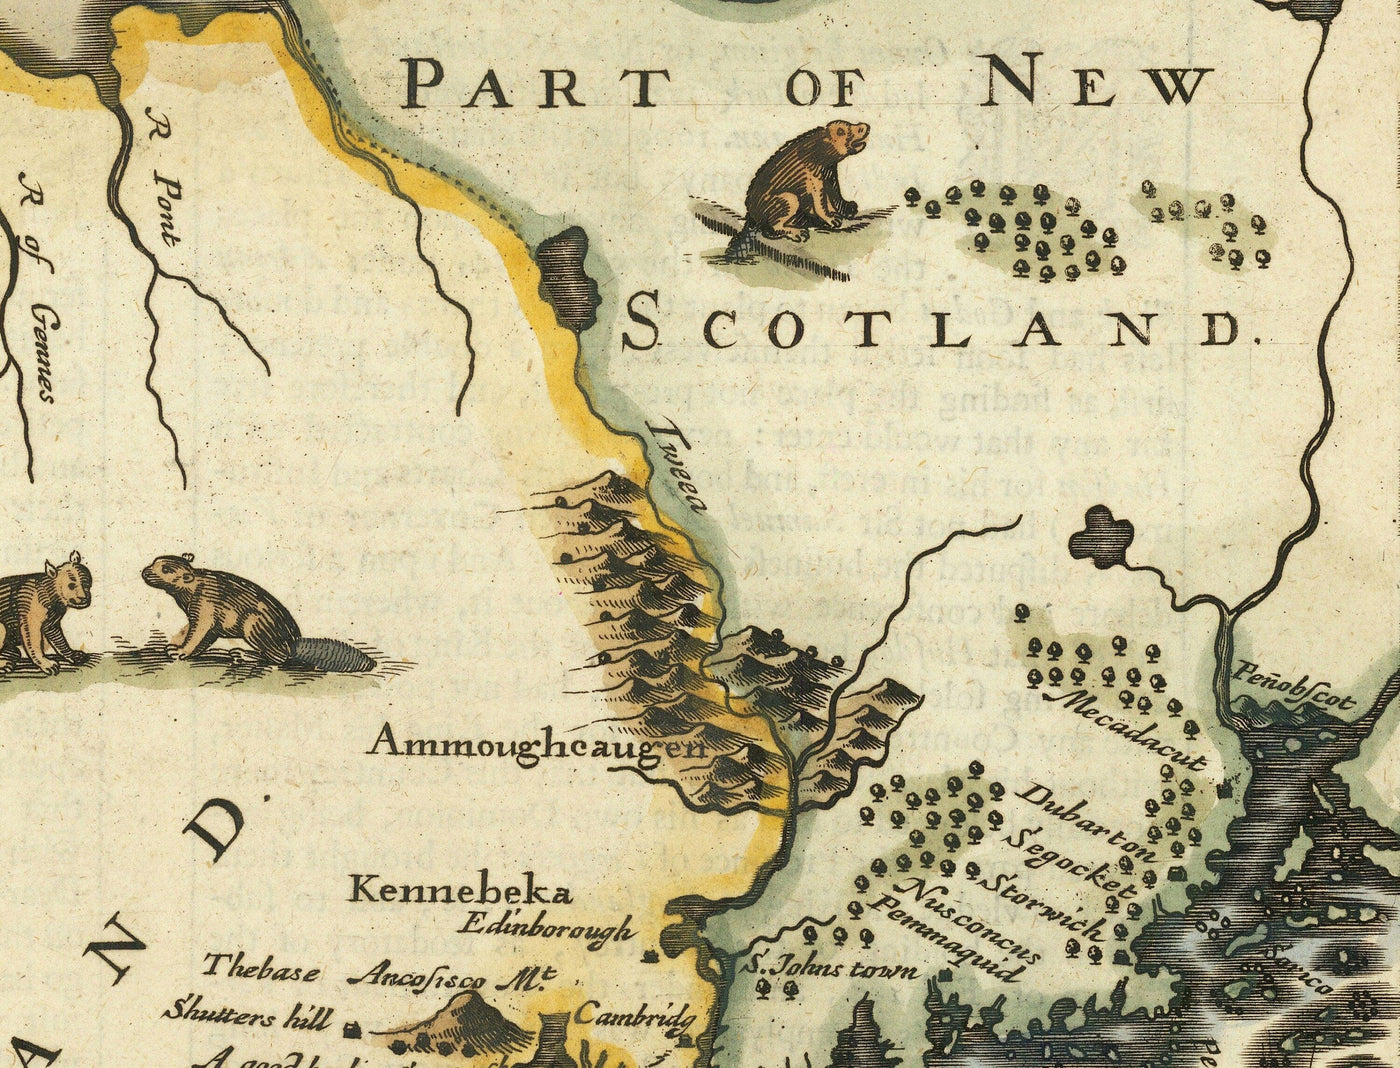 Antiguo mapa de Nueva York y Nueva Inglaterra, 1676 por John Speed - Costa Este de EEUU, Nueva Jersey, Massachusetts, Colonias Británicas